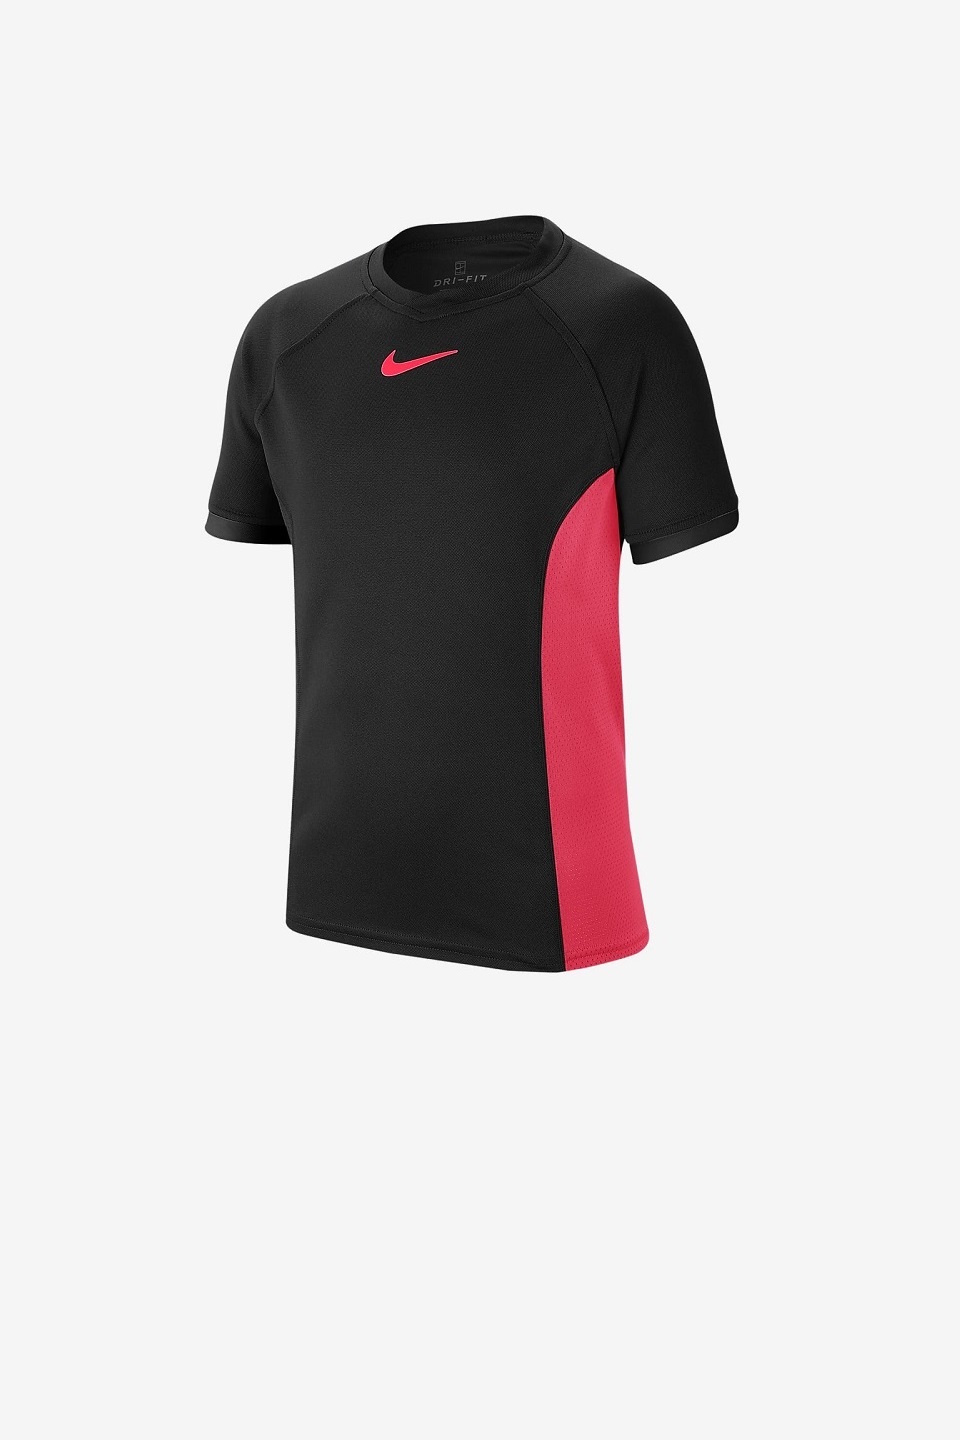 NIKE - Nike Court Dri Fit T-Shirt Çocuk 